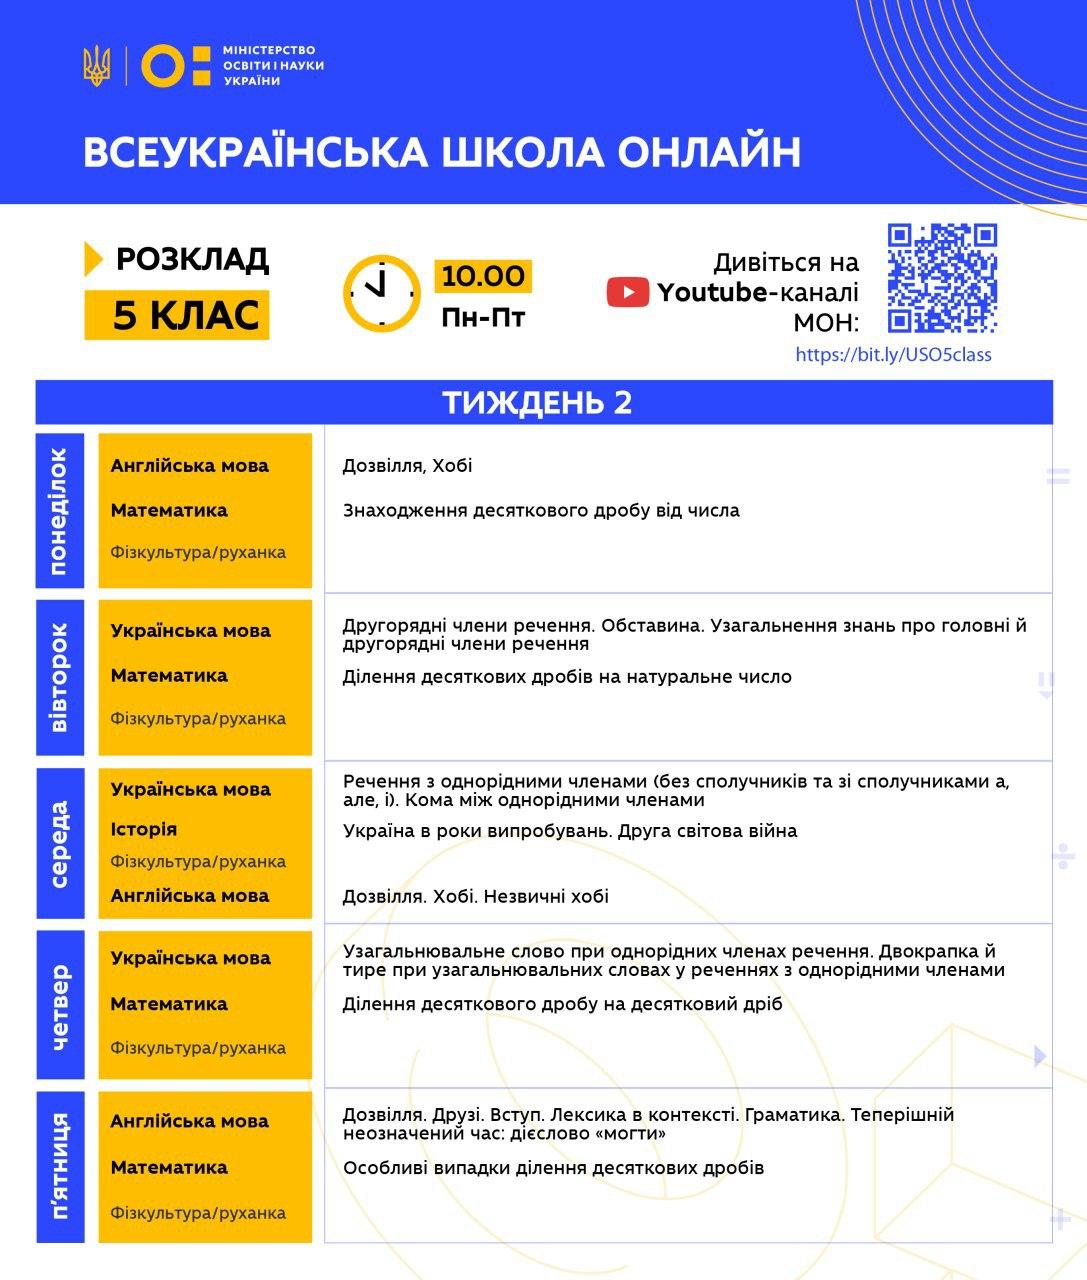 Всеукраинская школа онлайн. Расписание